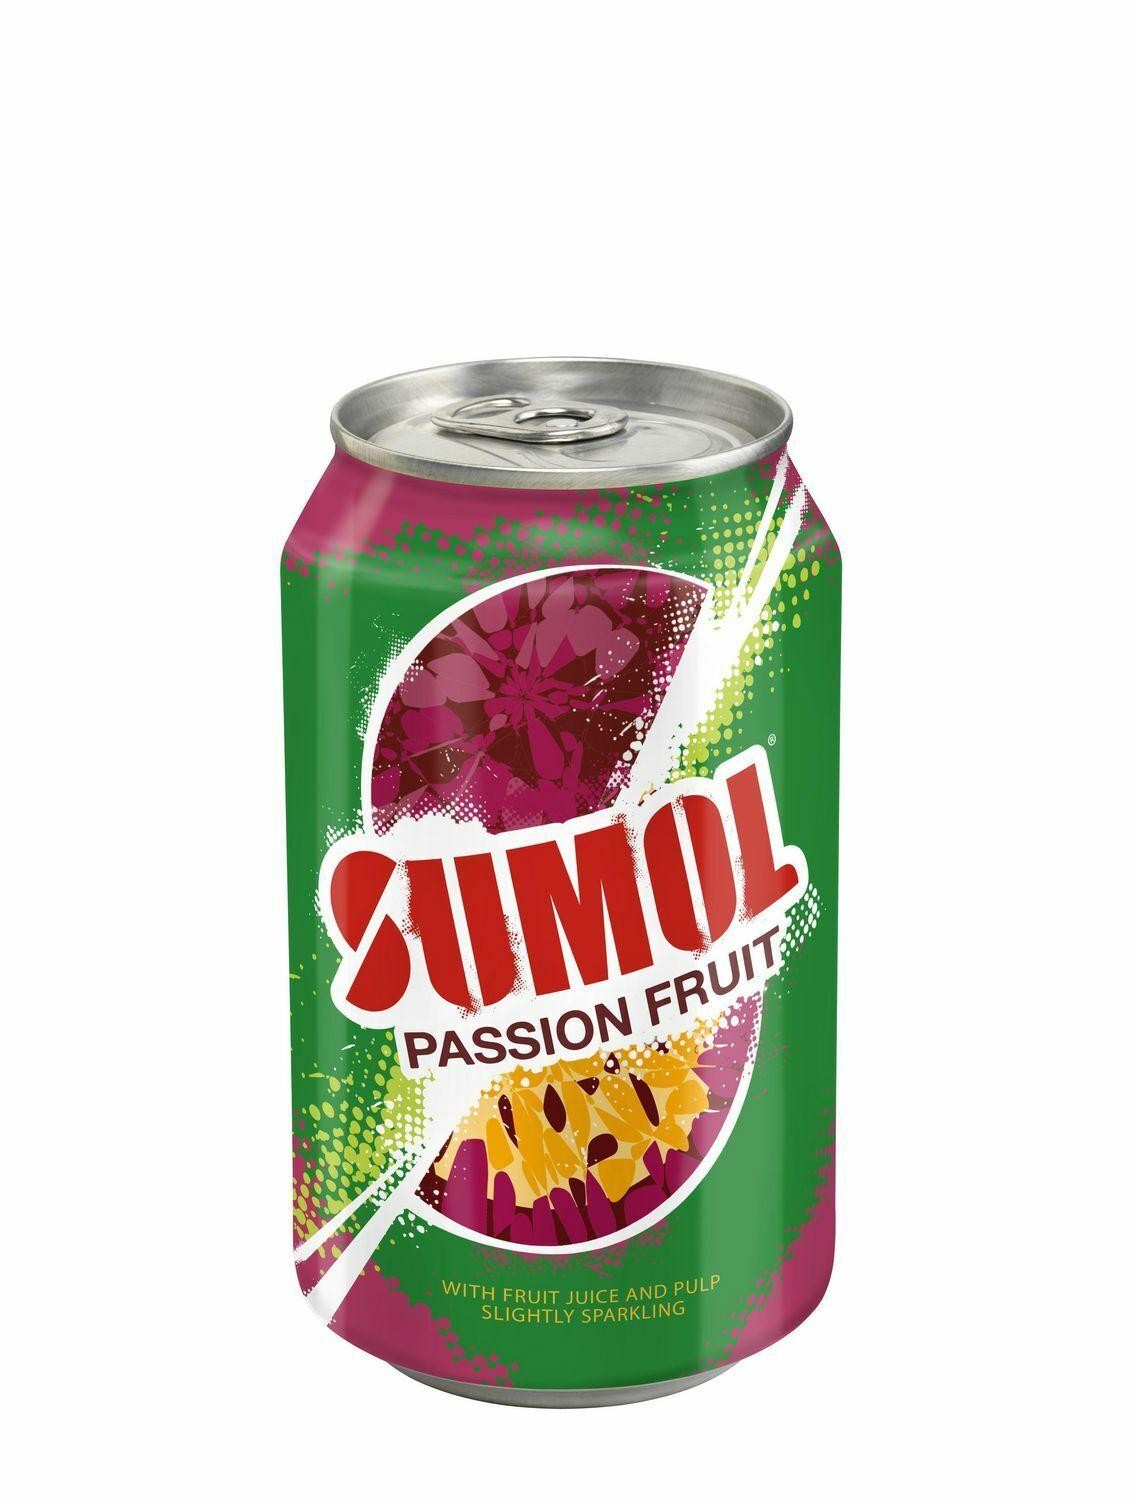 Sumol Passion Fruit